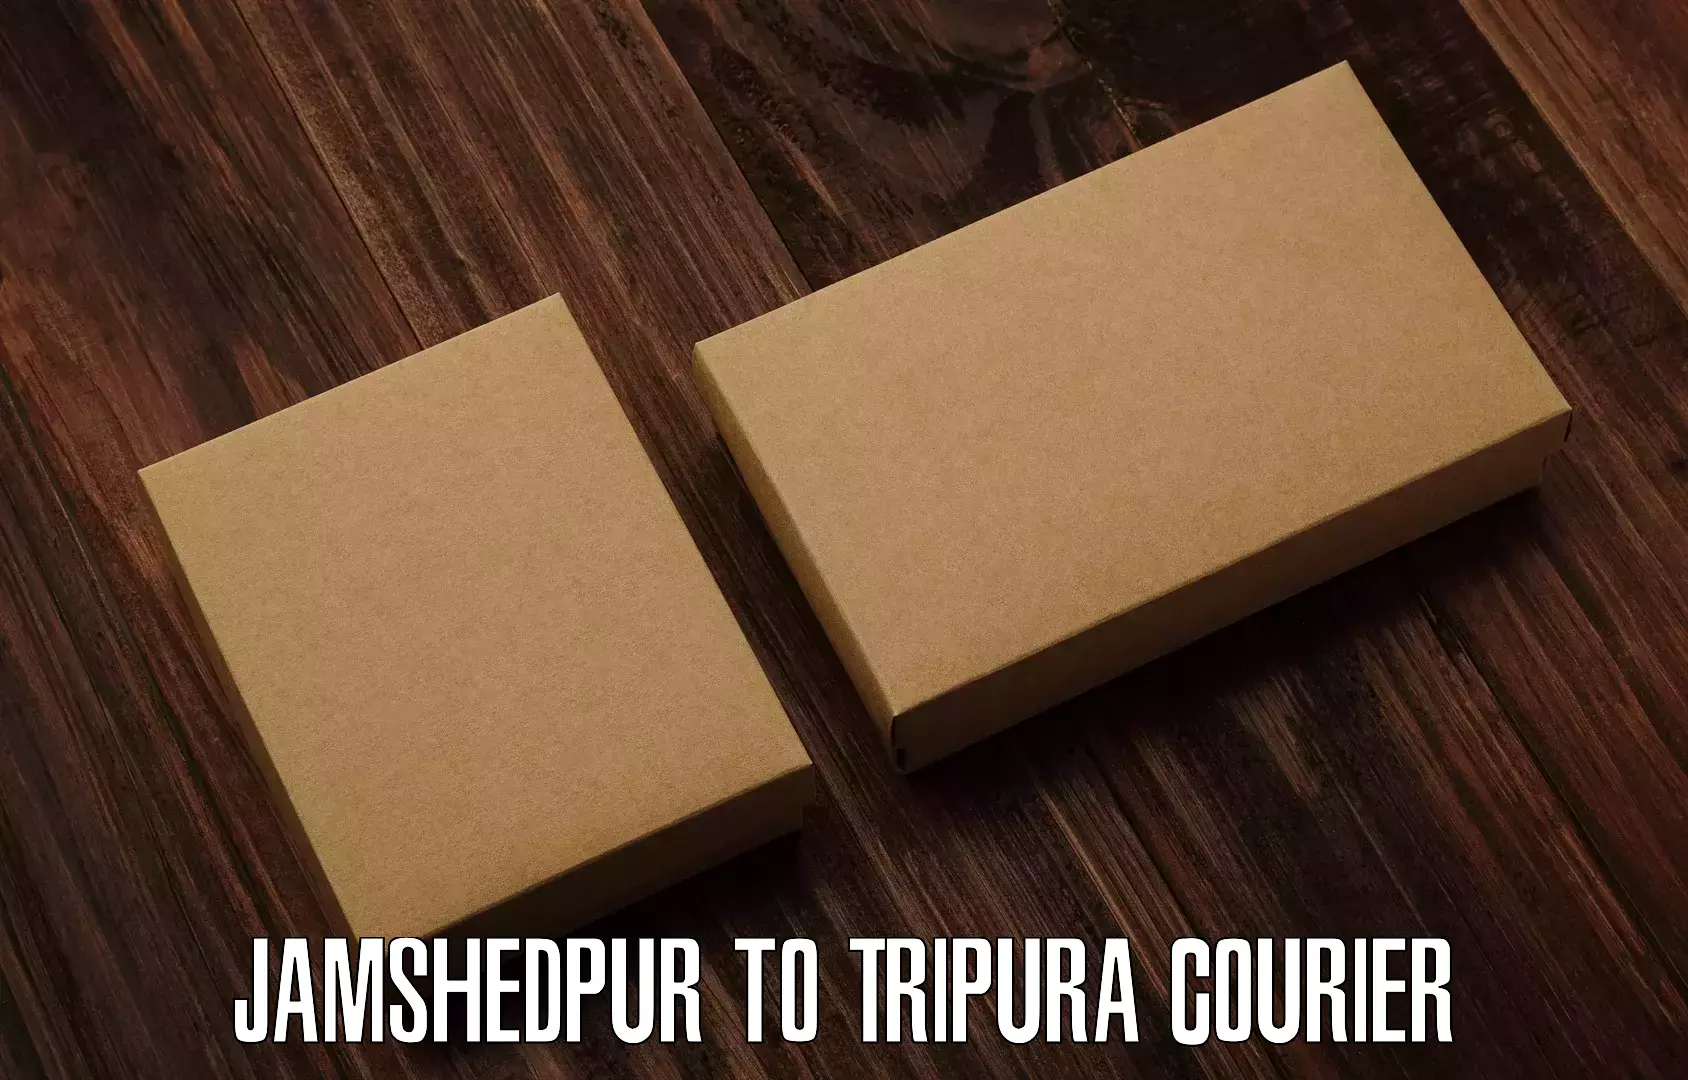 Regular parcel service in Jamshedpur to North Tripura